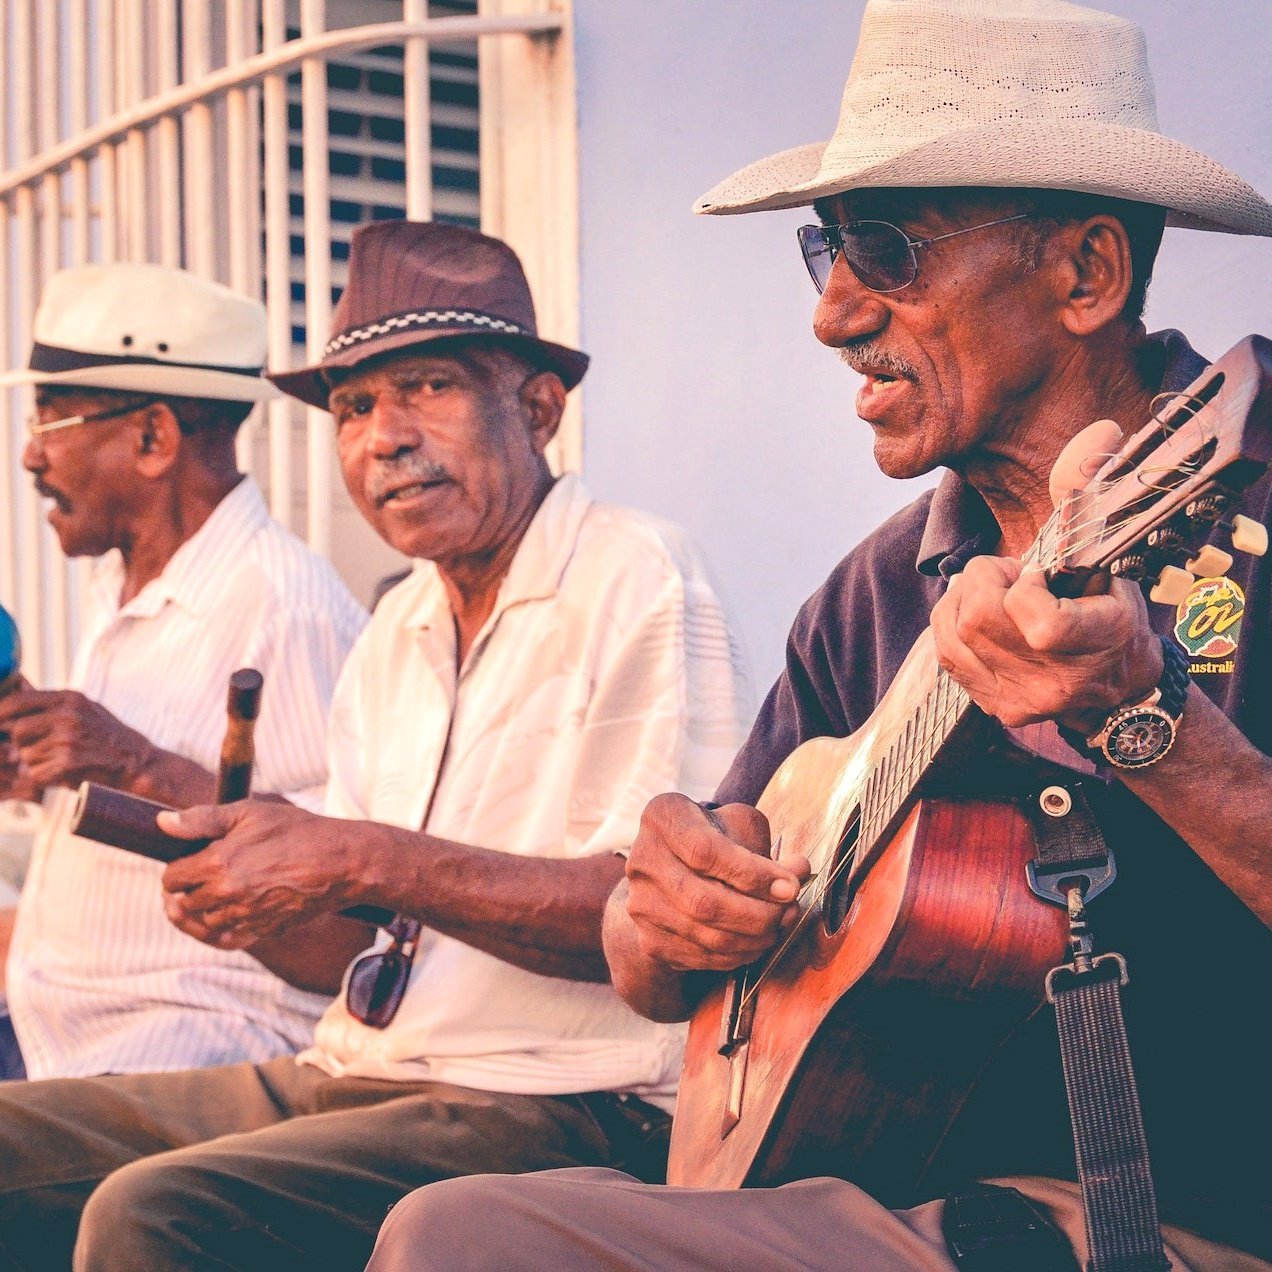 Drei Musiker auf einer Bank in Kuba